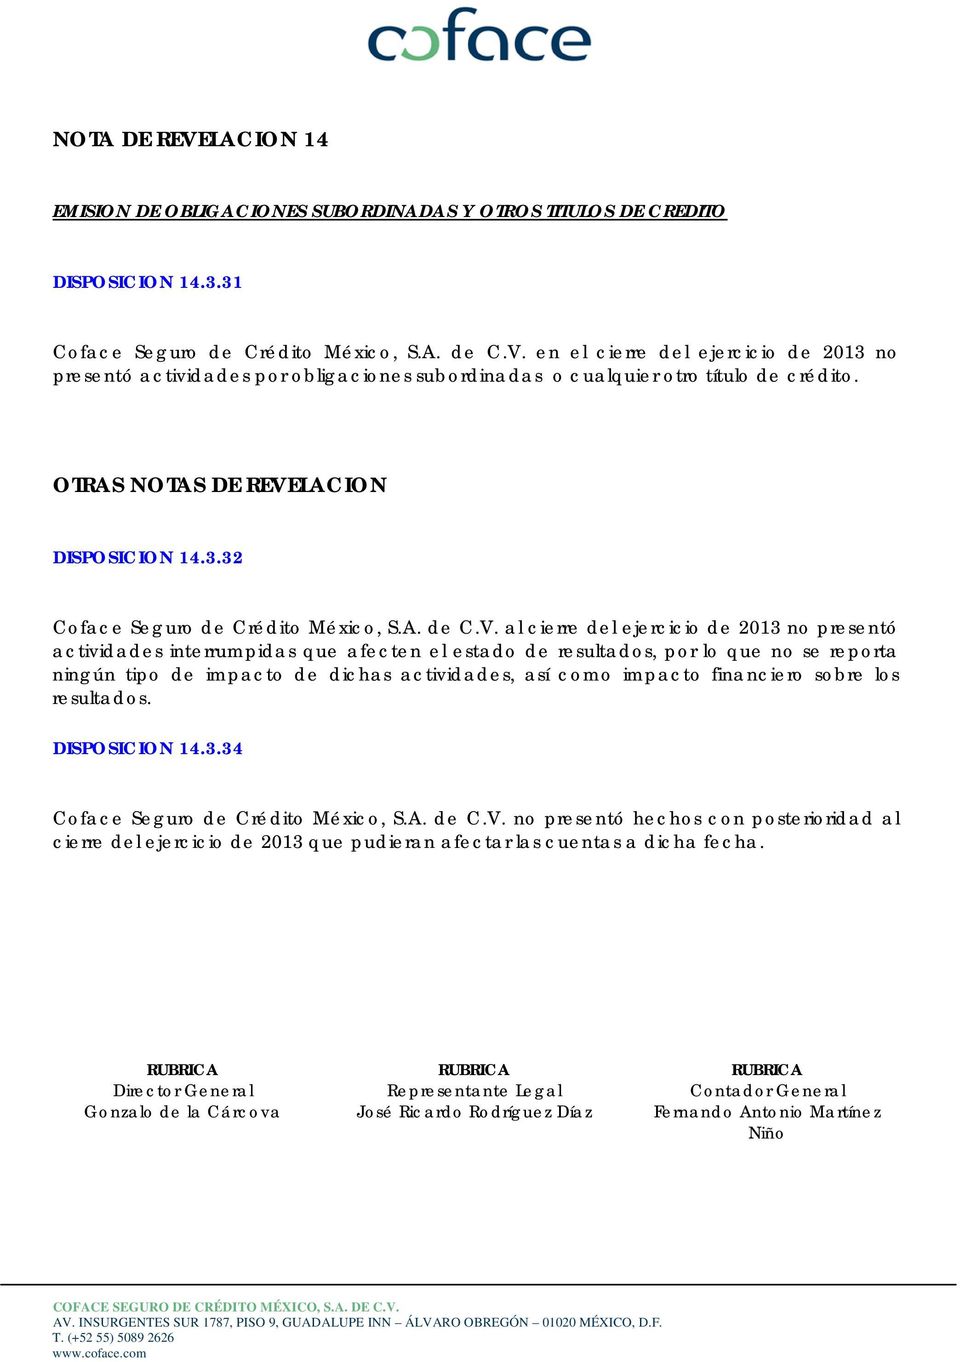 LACION DISPOSICION 14.3.32 Coface Seguro de Crédito México, S.A. de C.V.